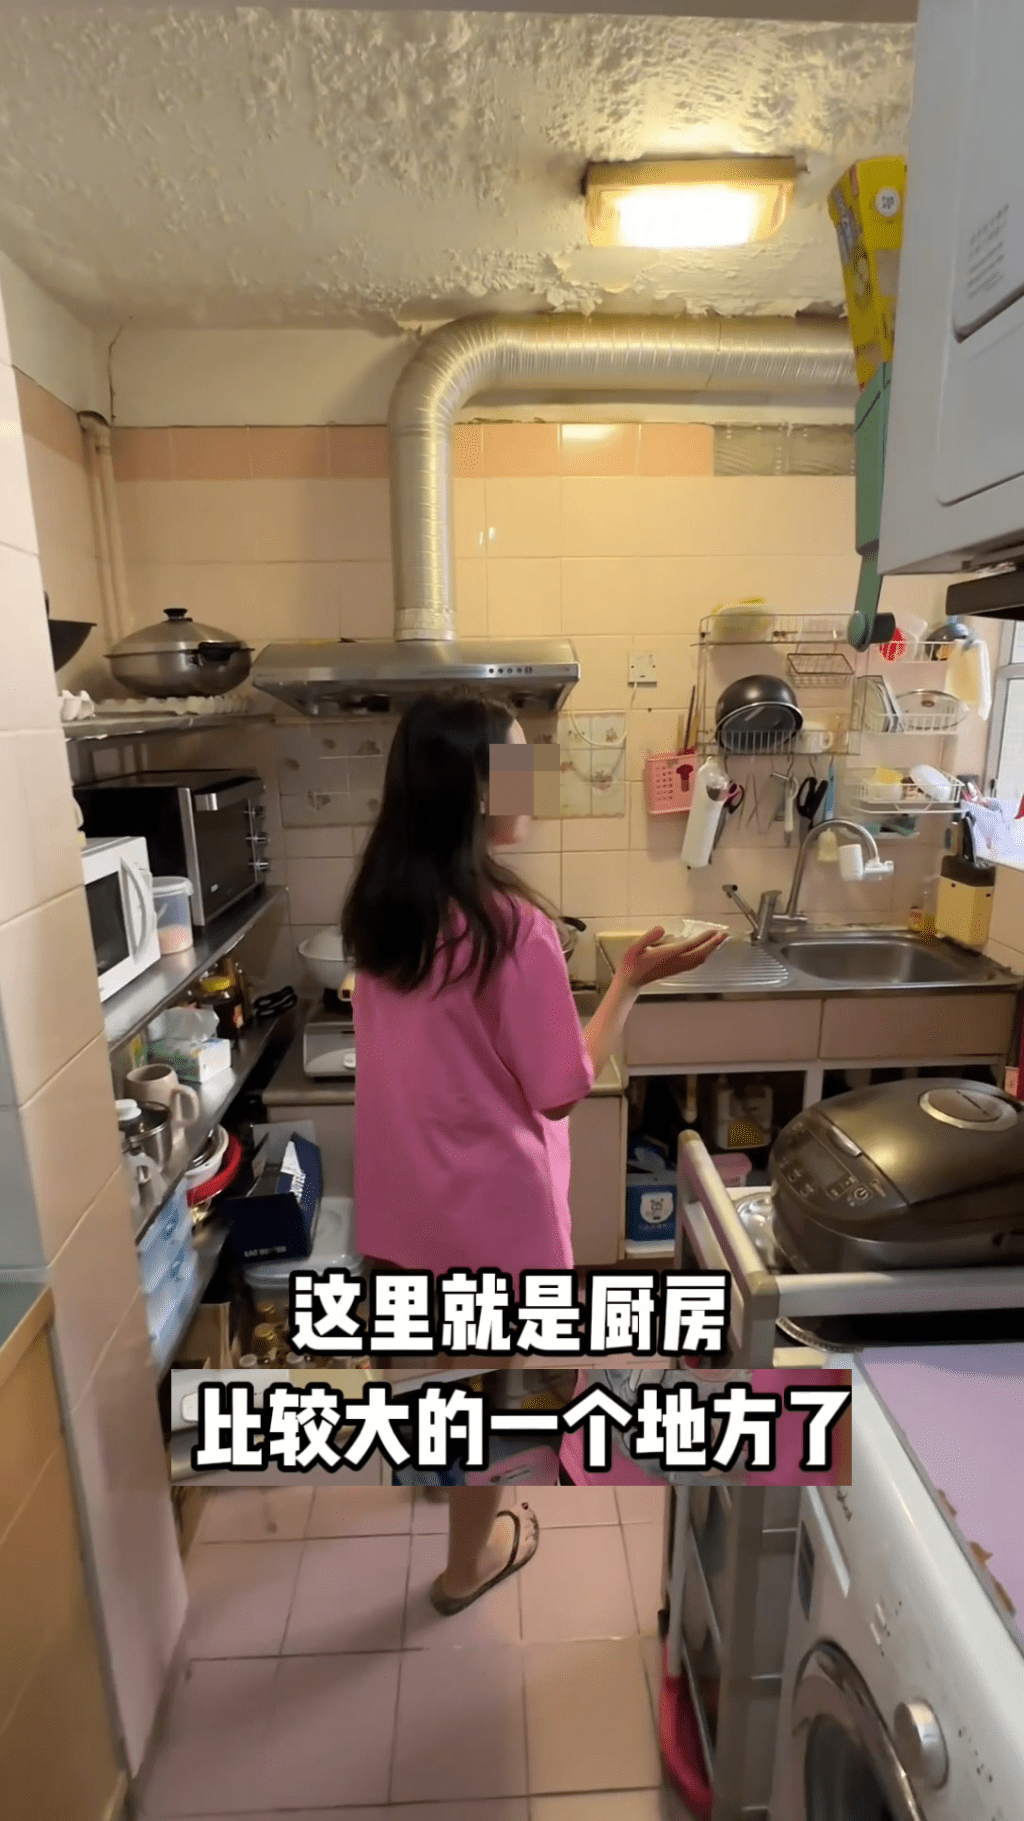 她介紹家中面積較大的廚房。